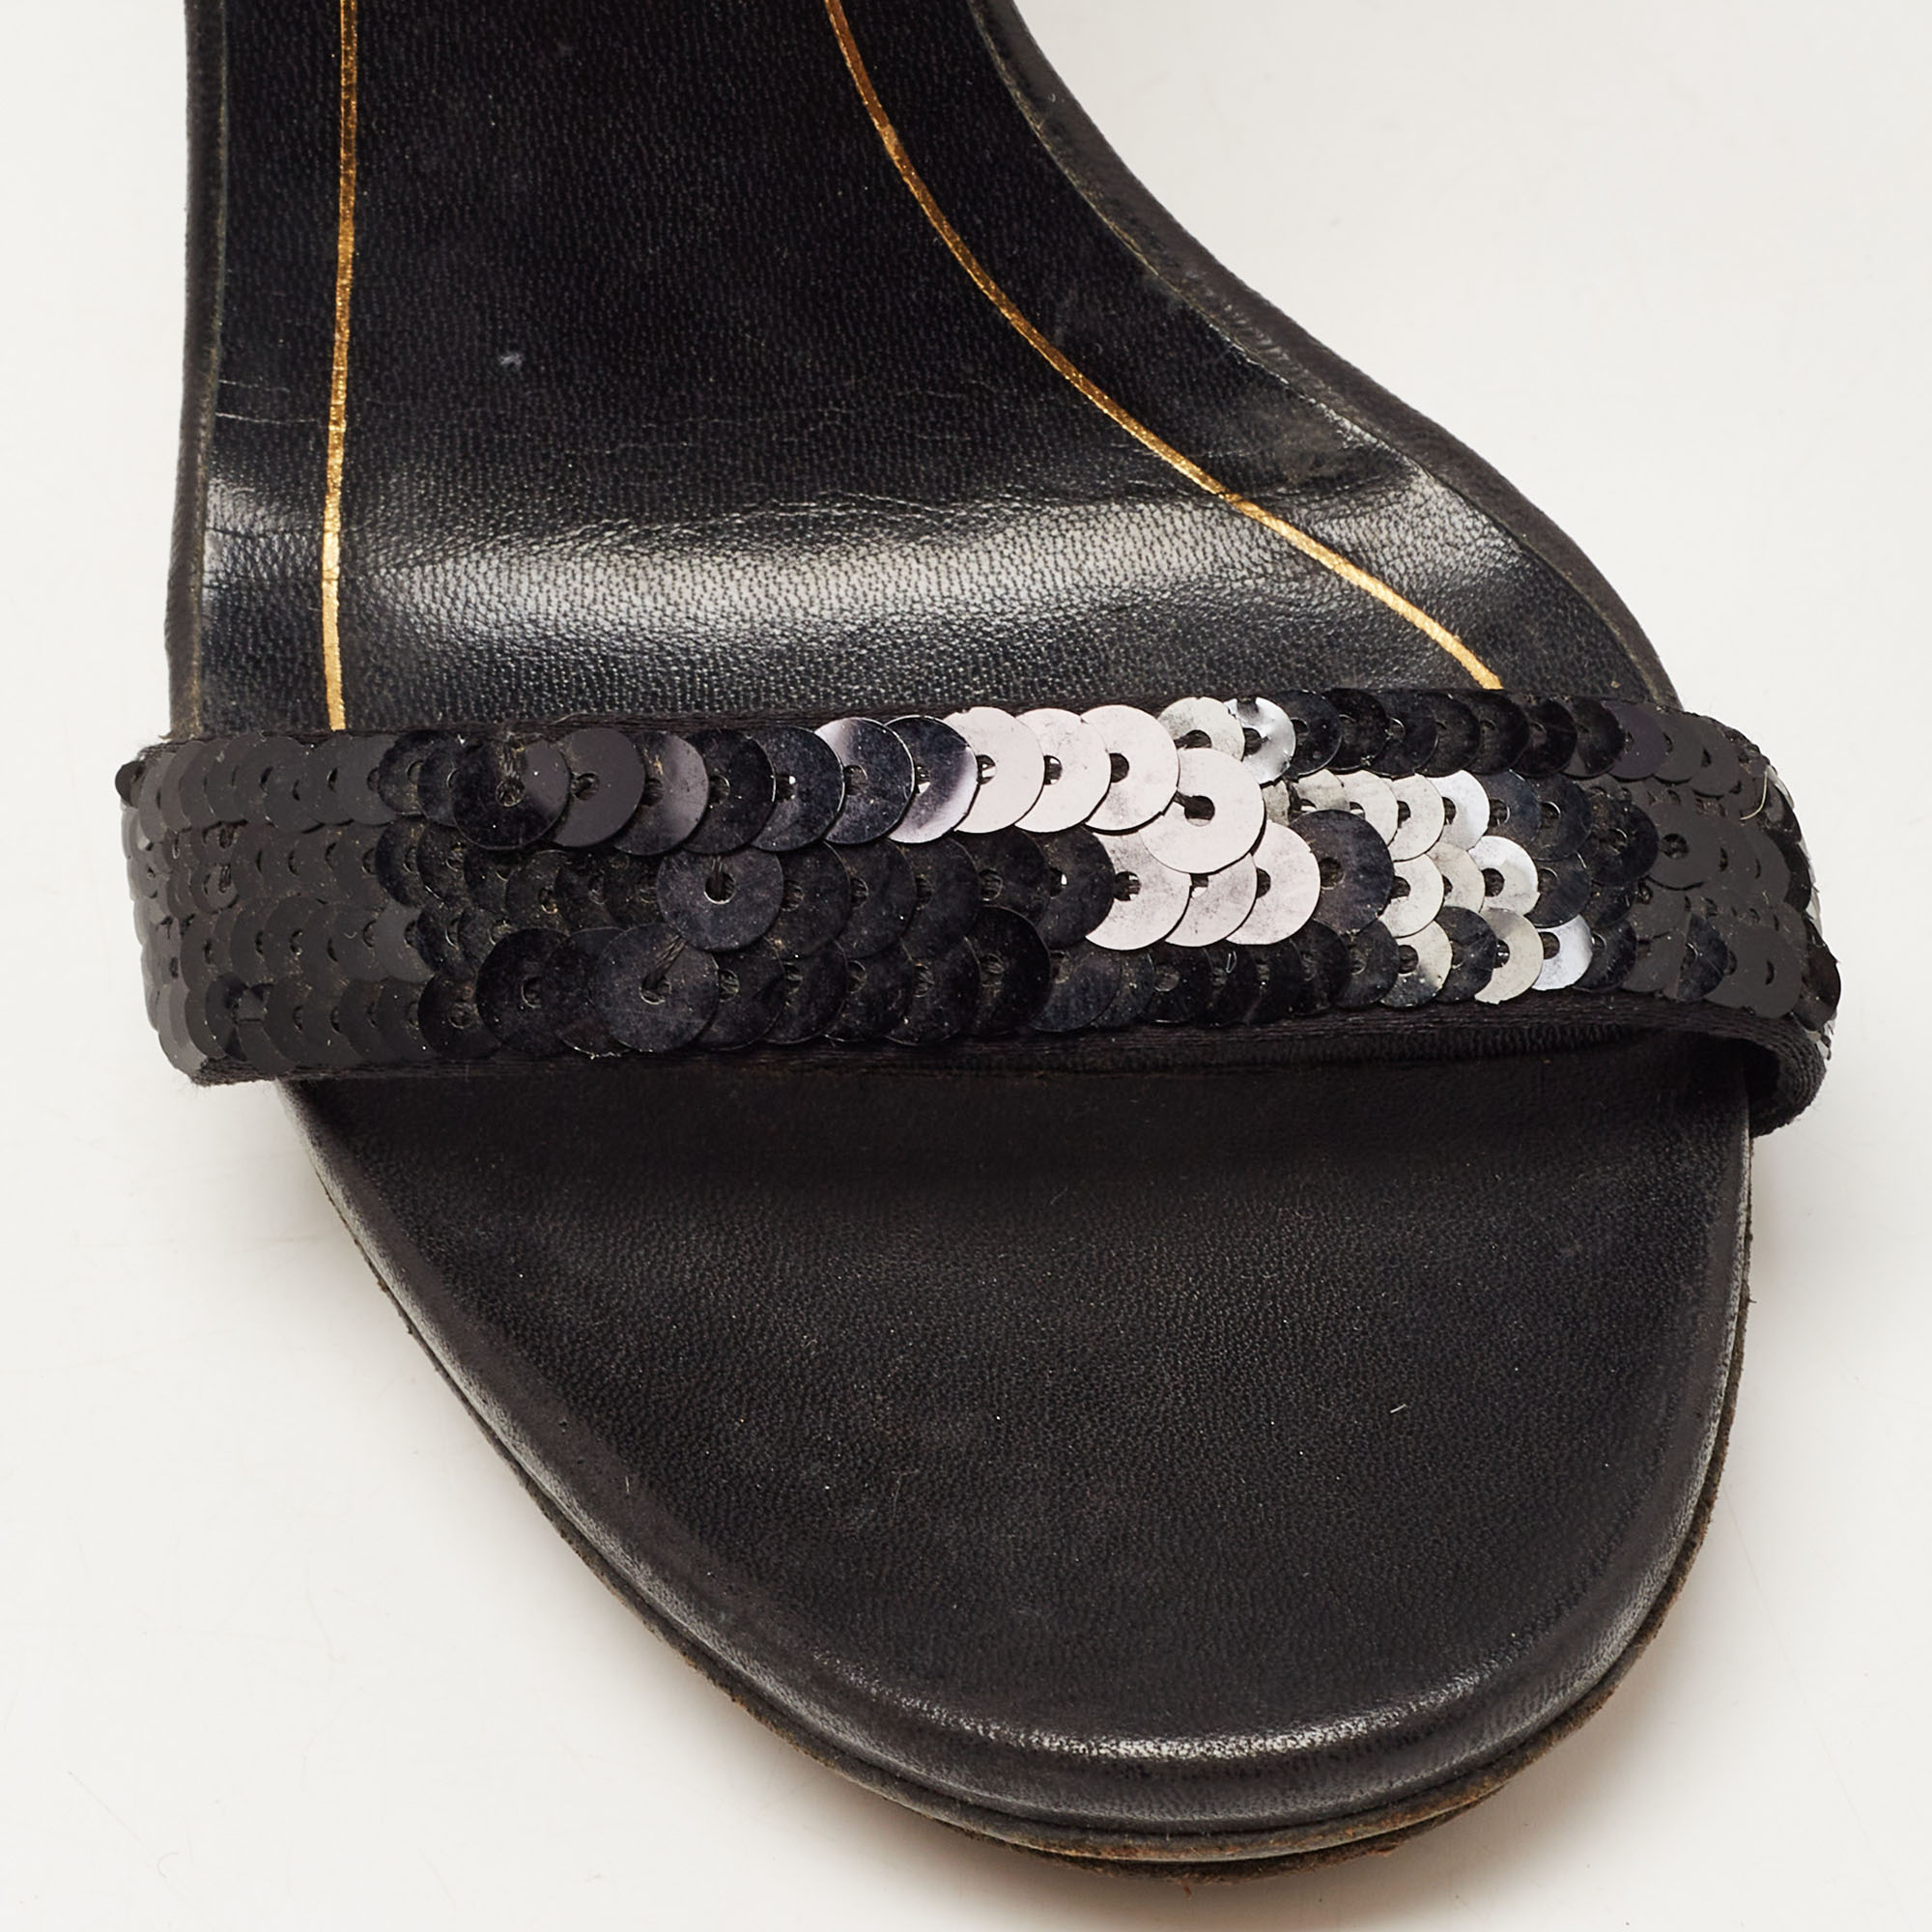 Gucci Black Sequins Ankle Tie Platform Sandals Size 36